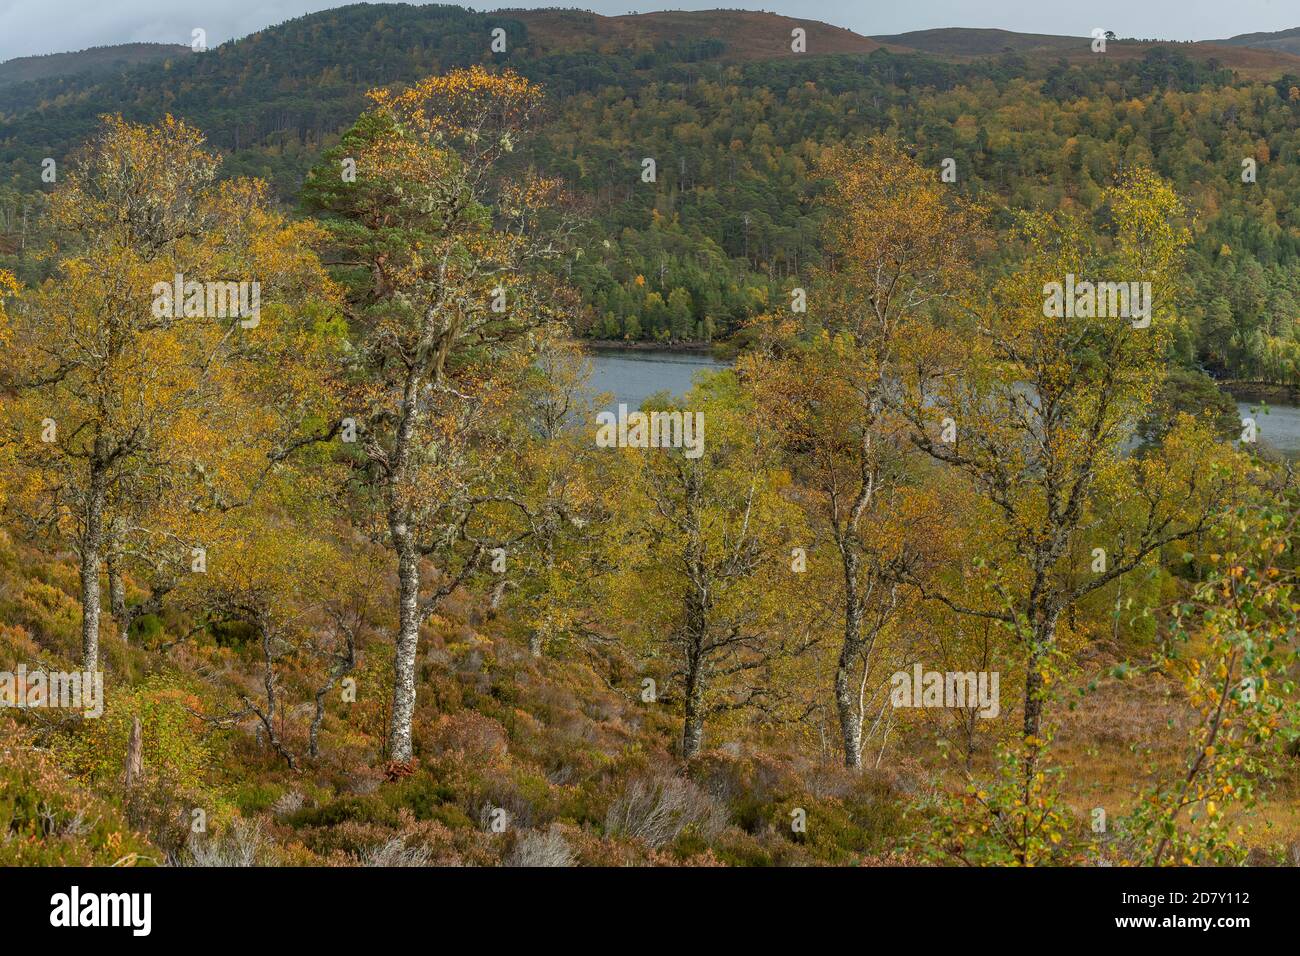 Flauschbirke, Betula pubescens Waldgebiet in Glen Affric, nationales Naturschutzgebiet und Caledonian Forest Reserve, im Herbst; Highland, Schottland. Stockfoto